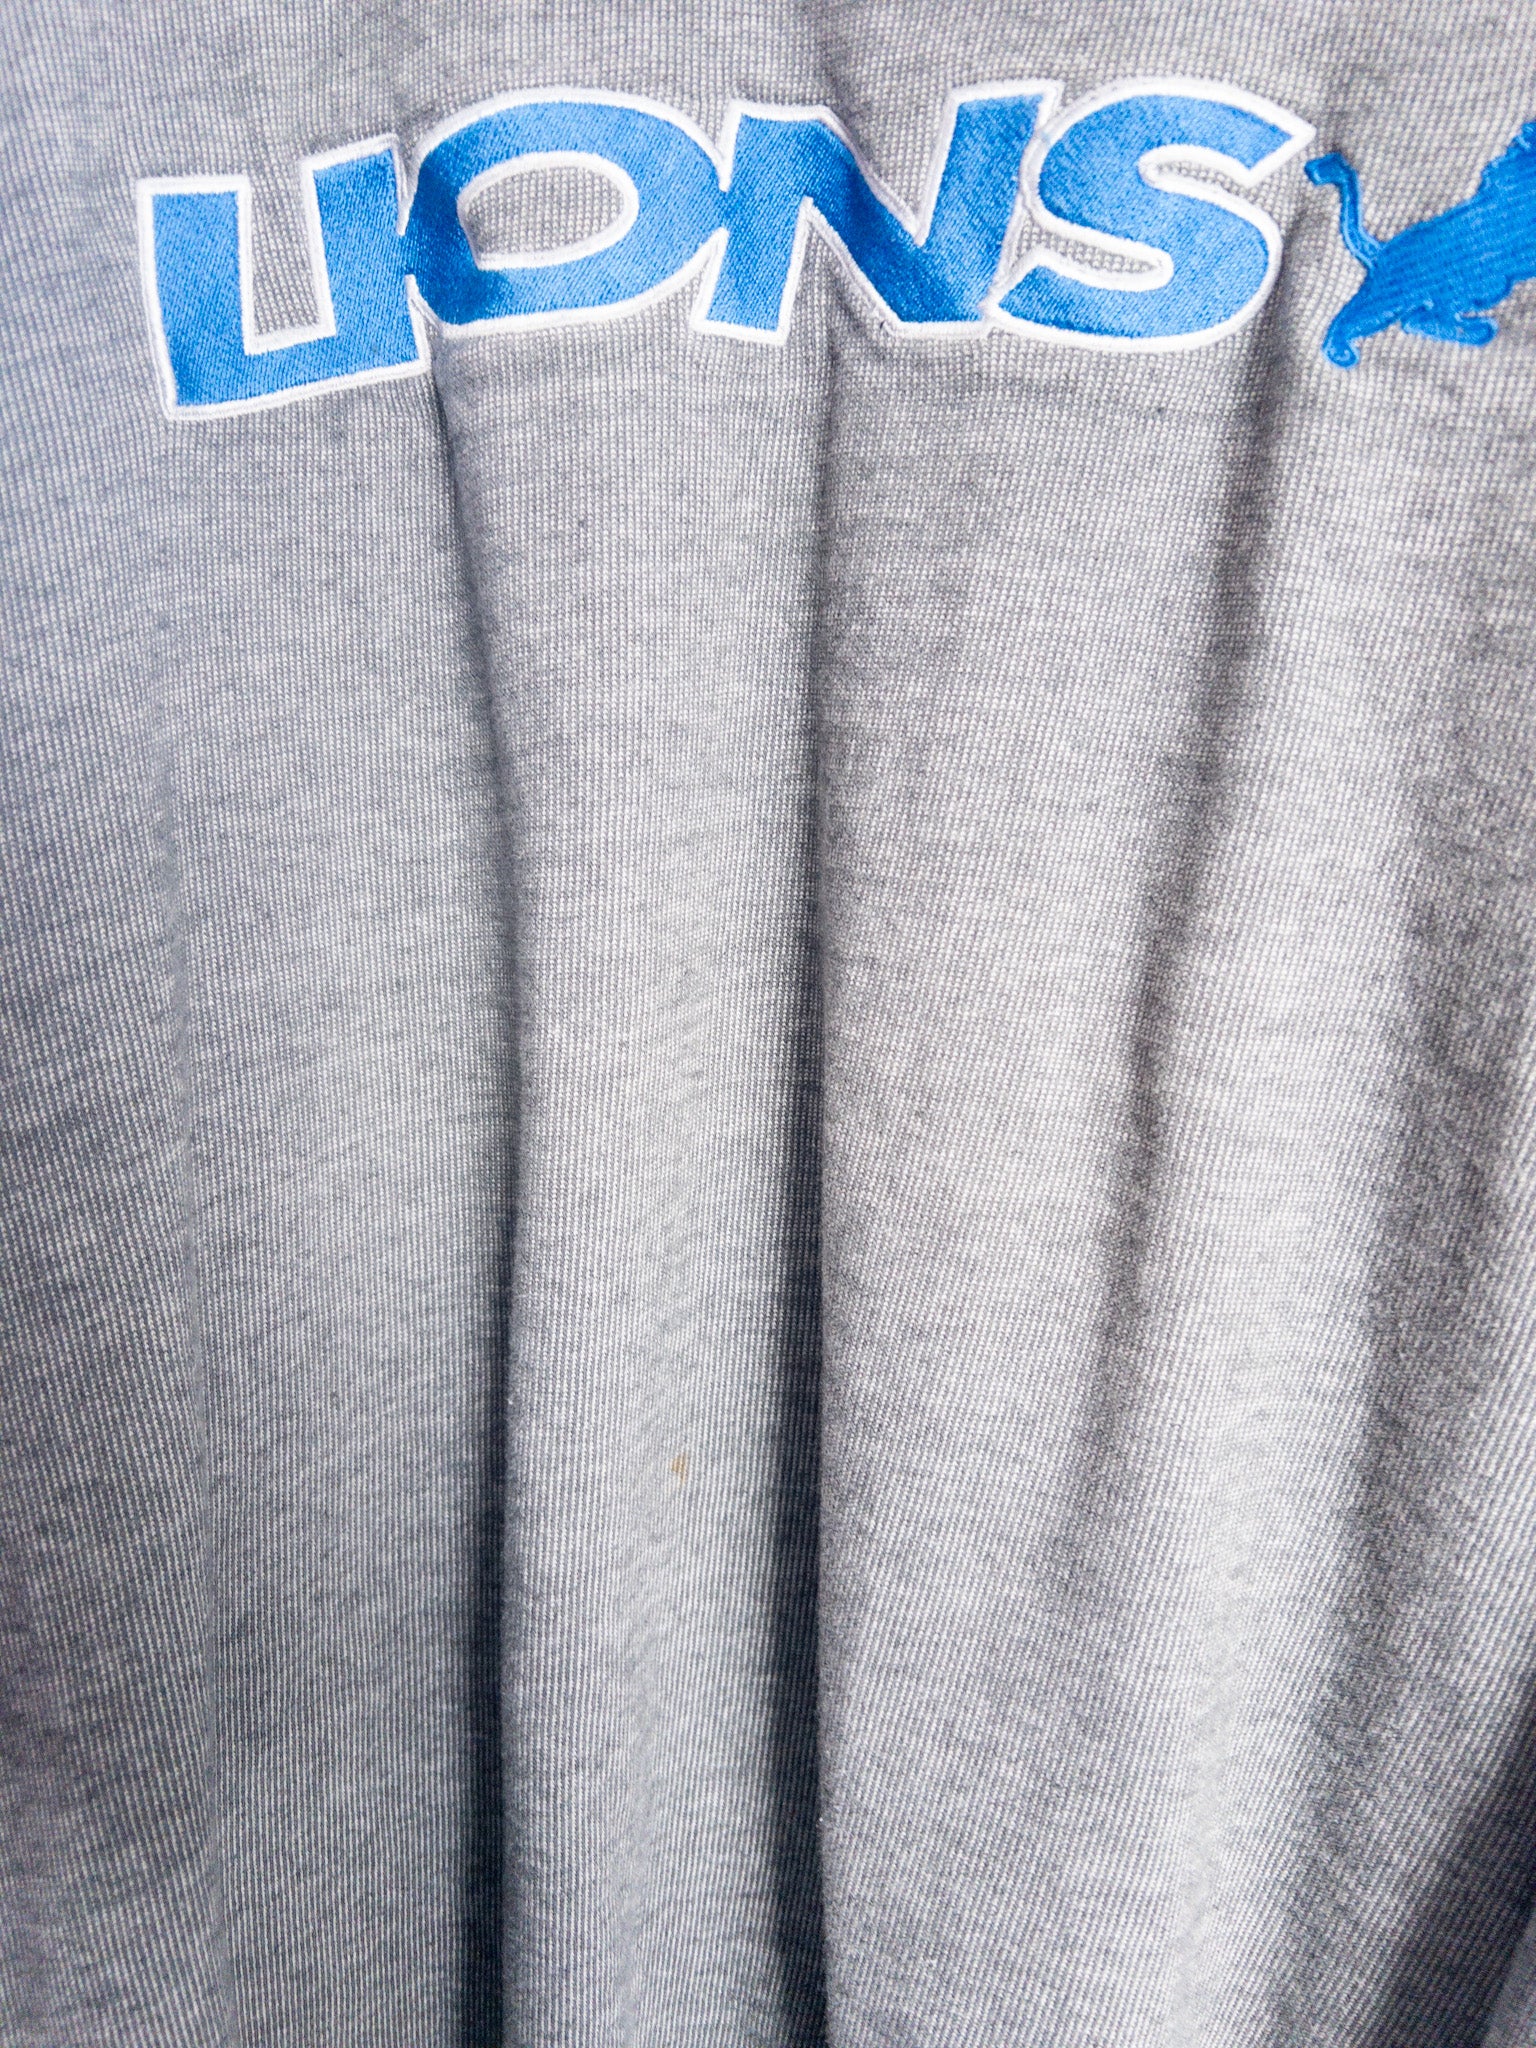 Vintage Detroit Lions Sweatshirt (L)